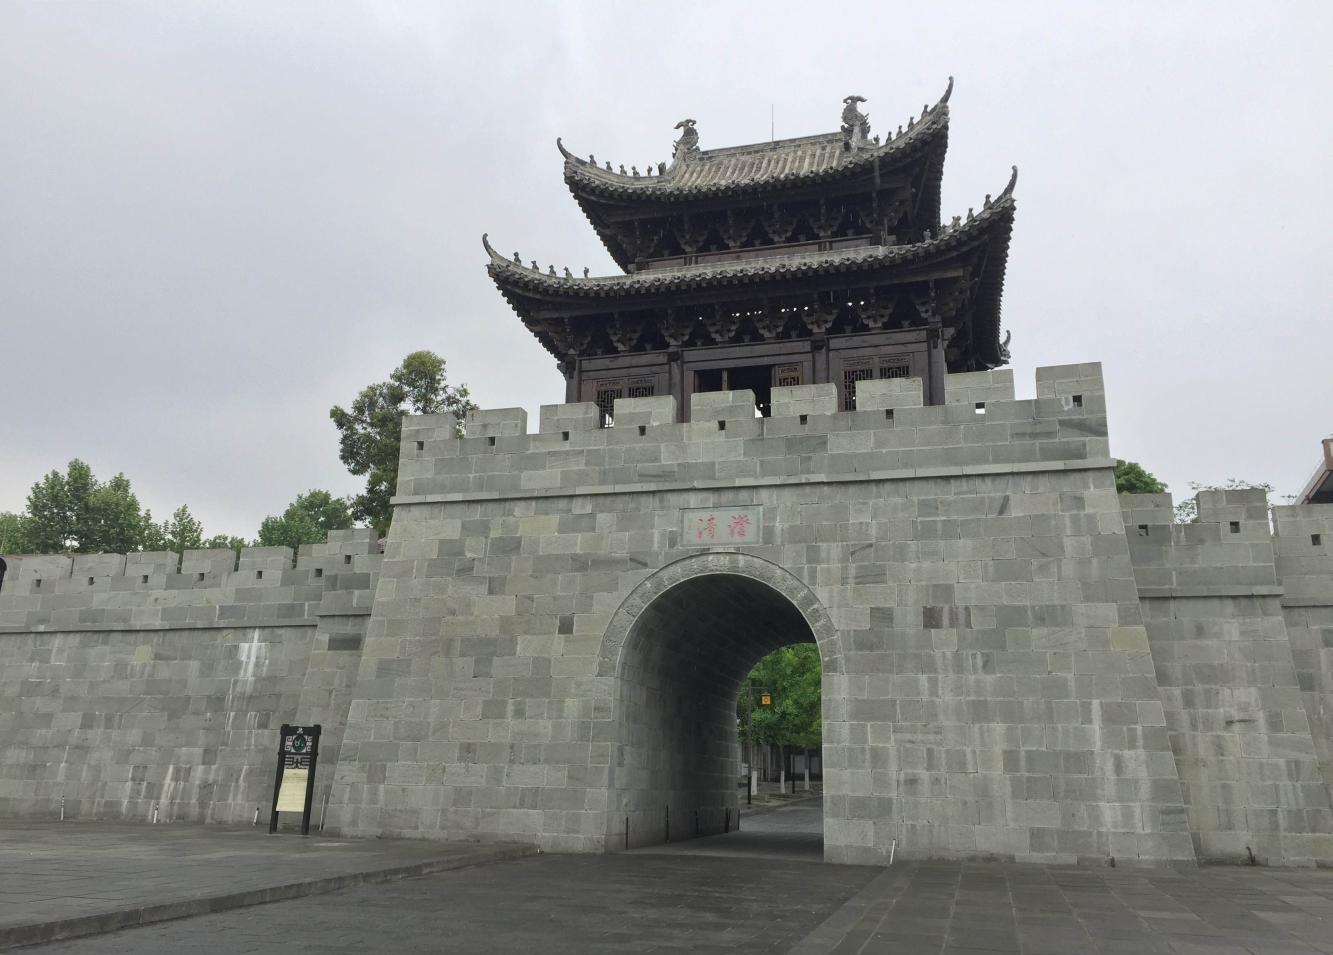 中国四大古城, 历史悠久的四座城池, 哪一座